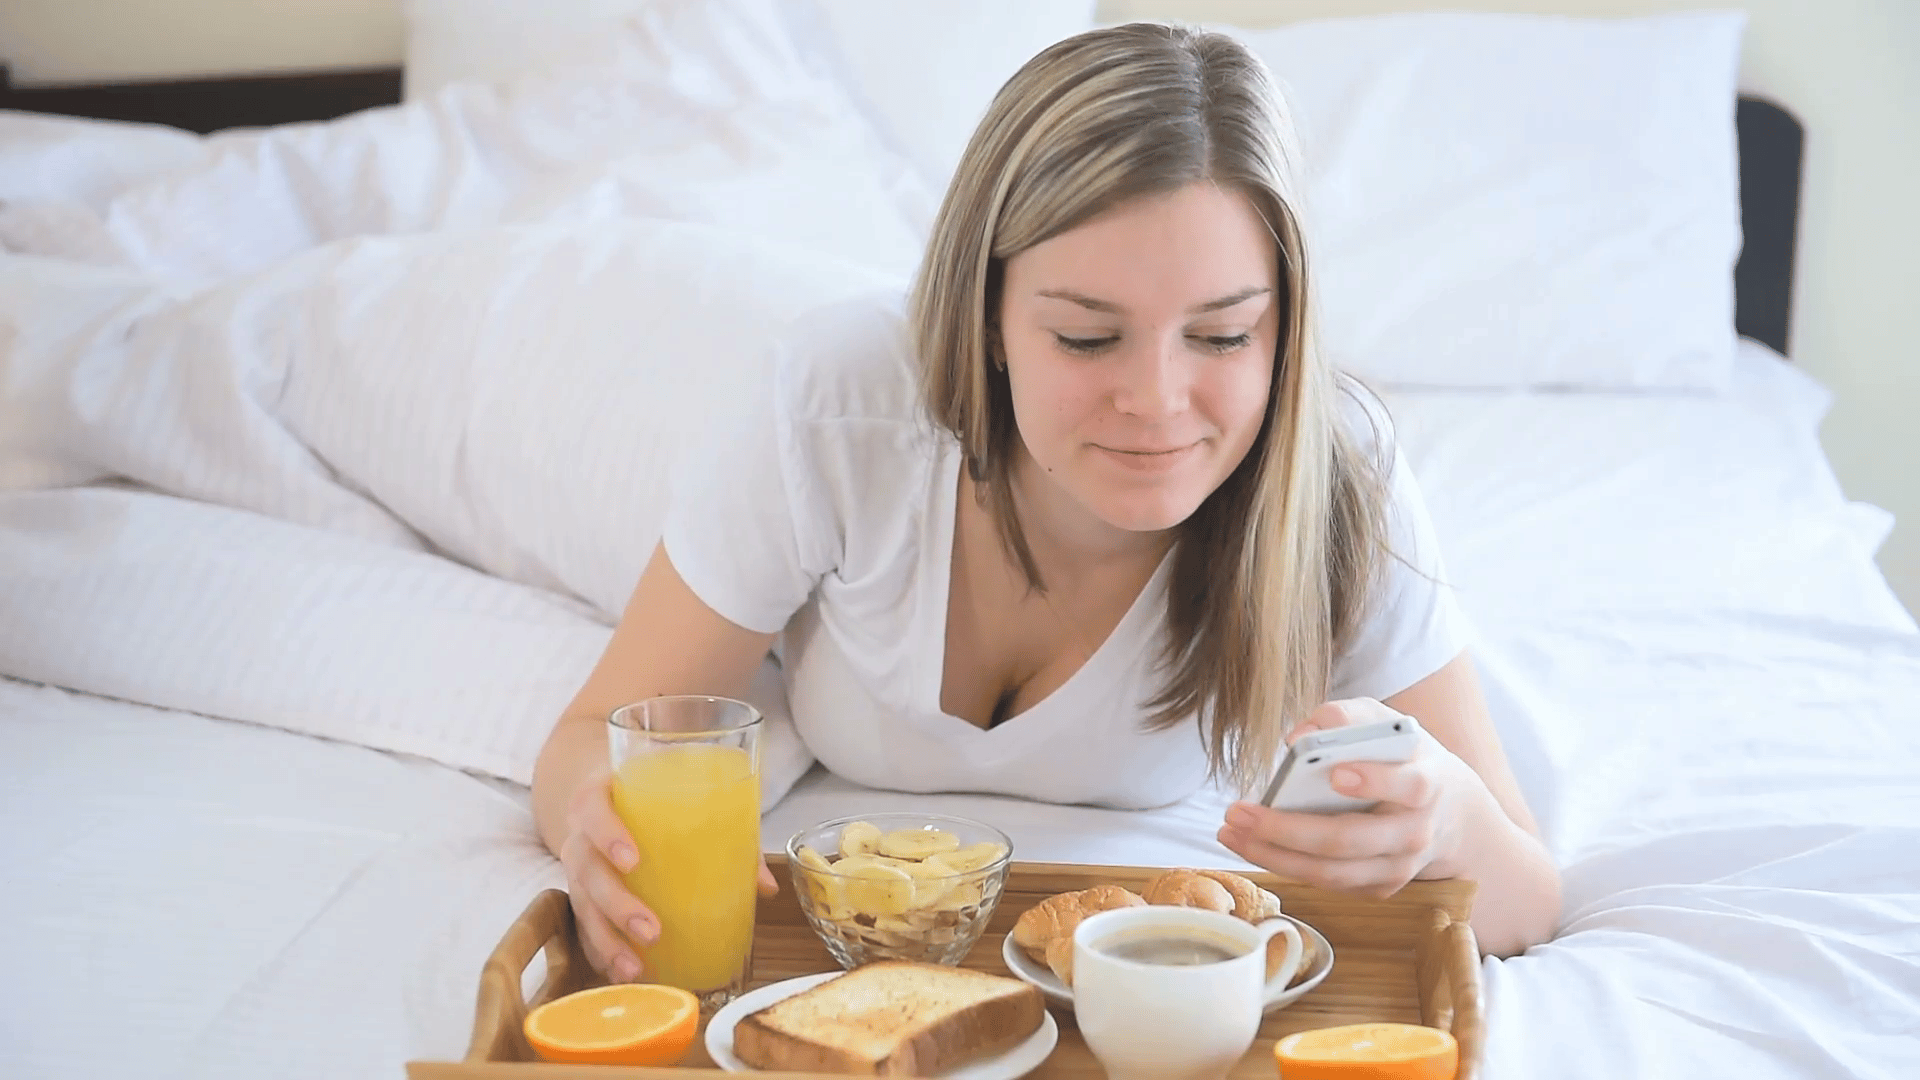 Špatné ranní návyky způsobují tloustnutí. Pozor na snídani, nápoje i sledování mobilu